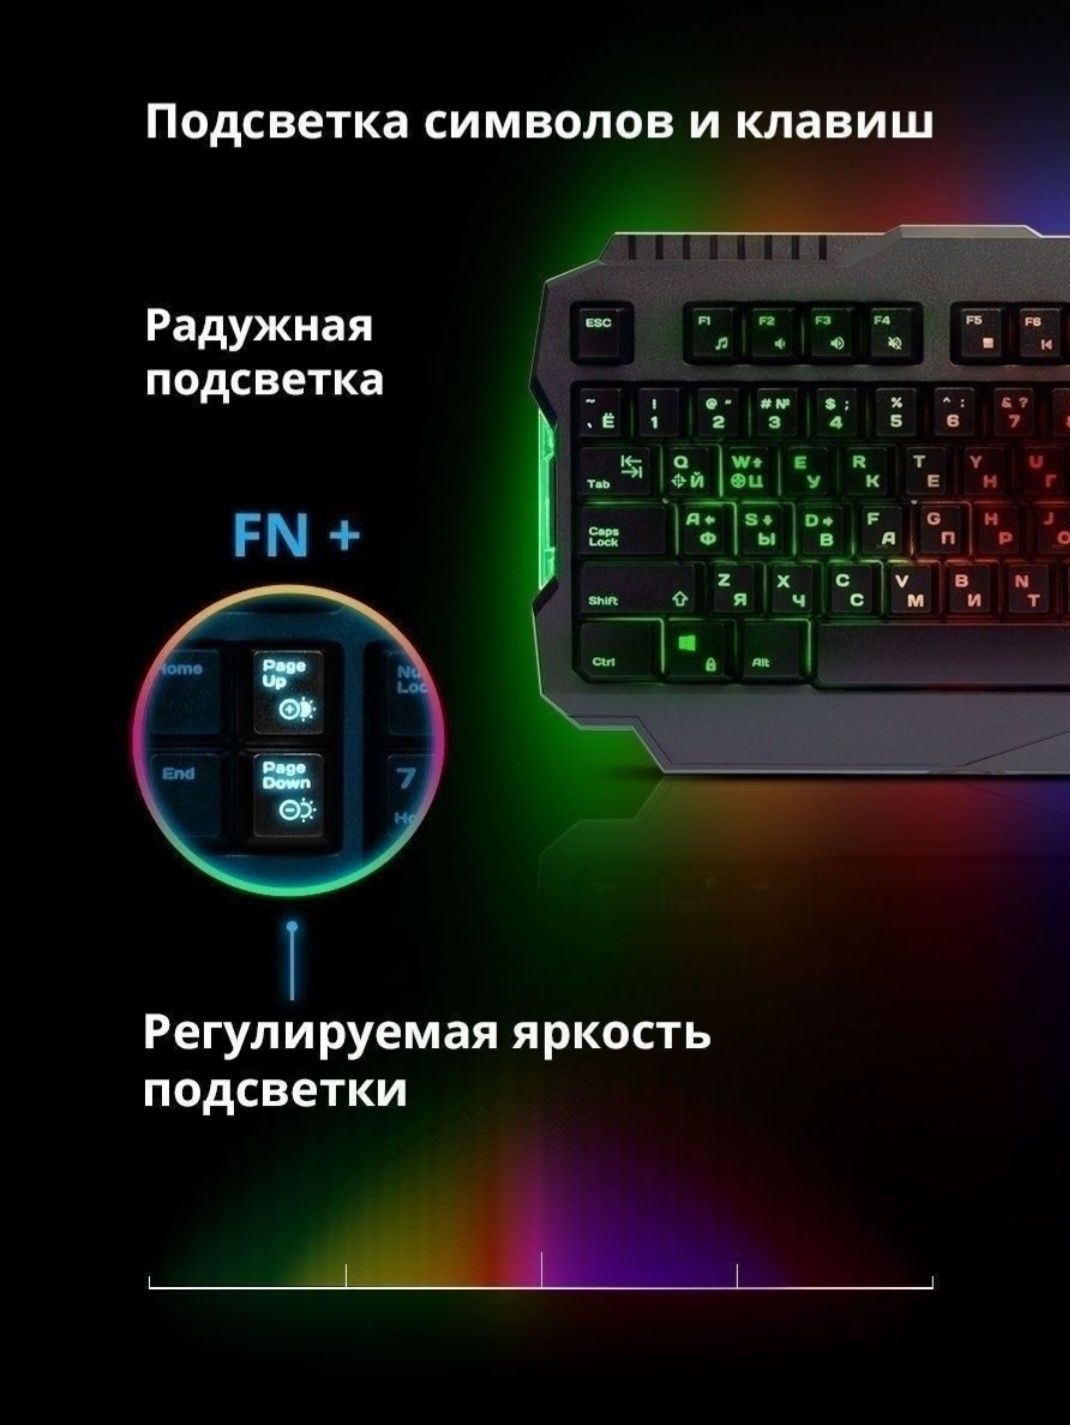 Продаётся Legion GK-010DL. Игровая клавиатура, сочетающая в себе пакет